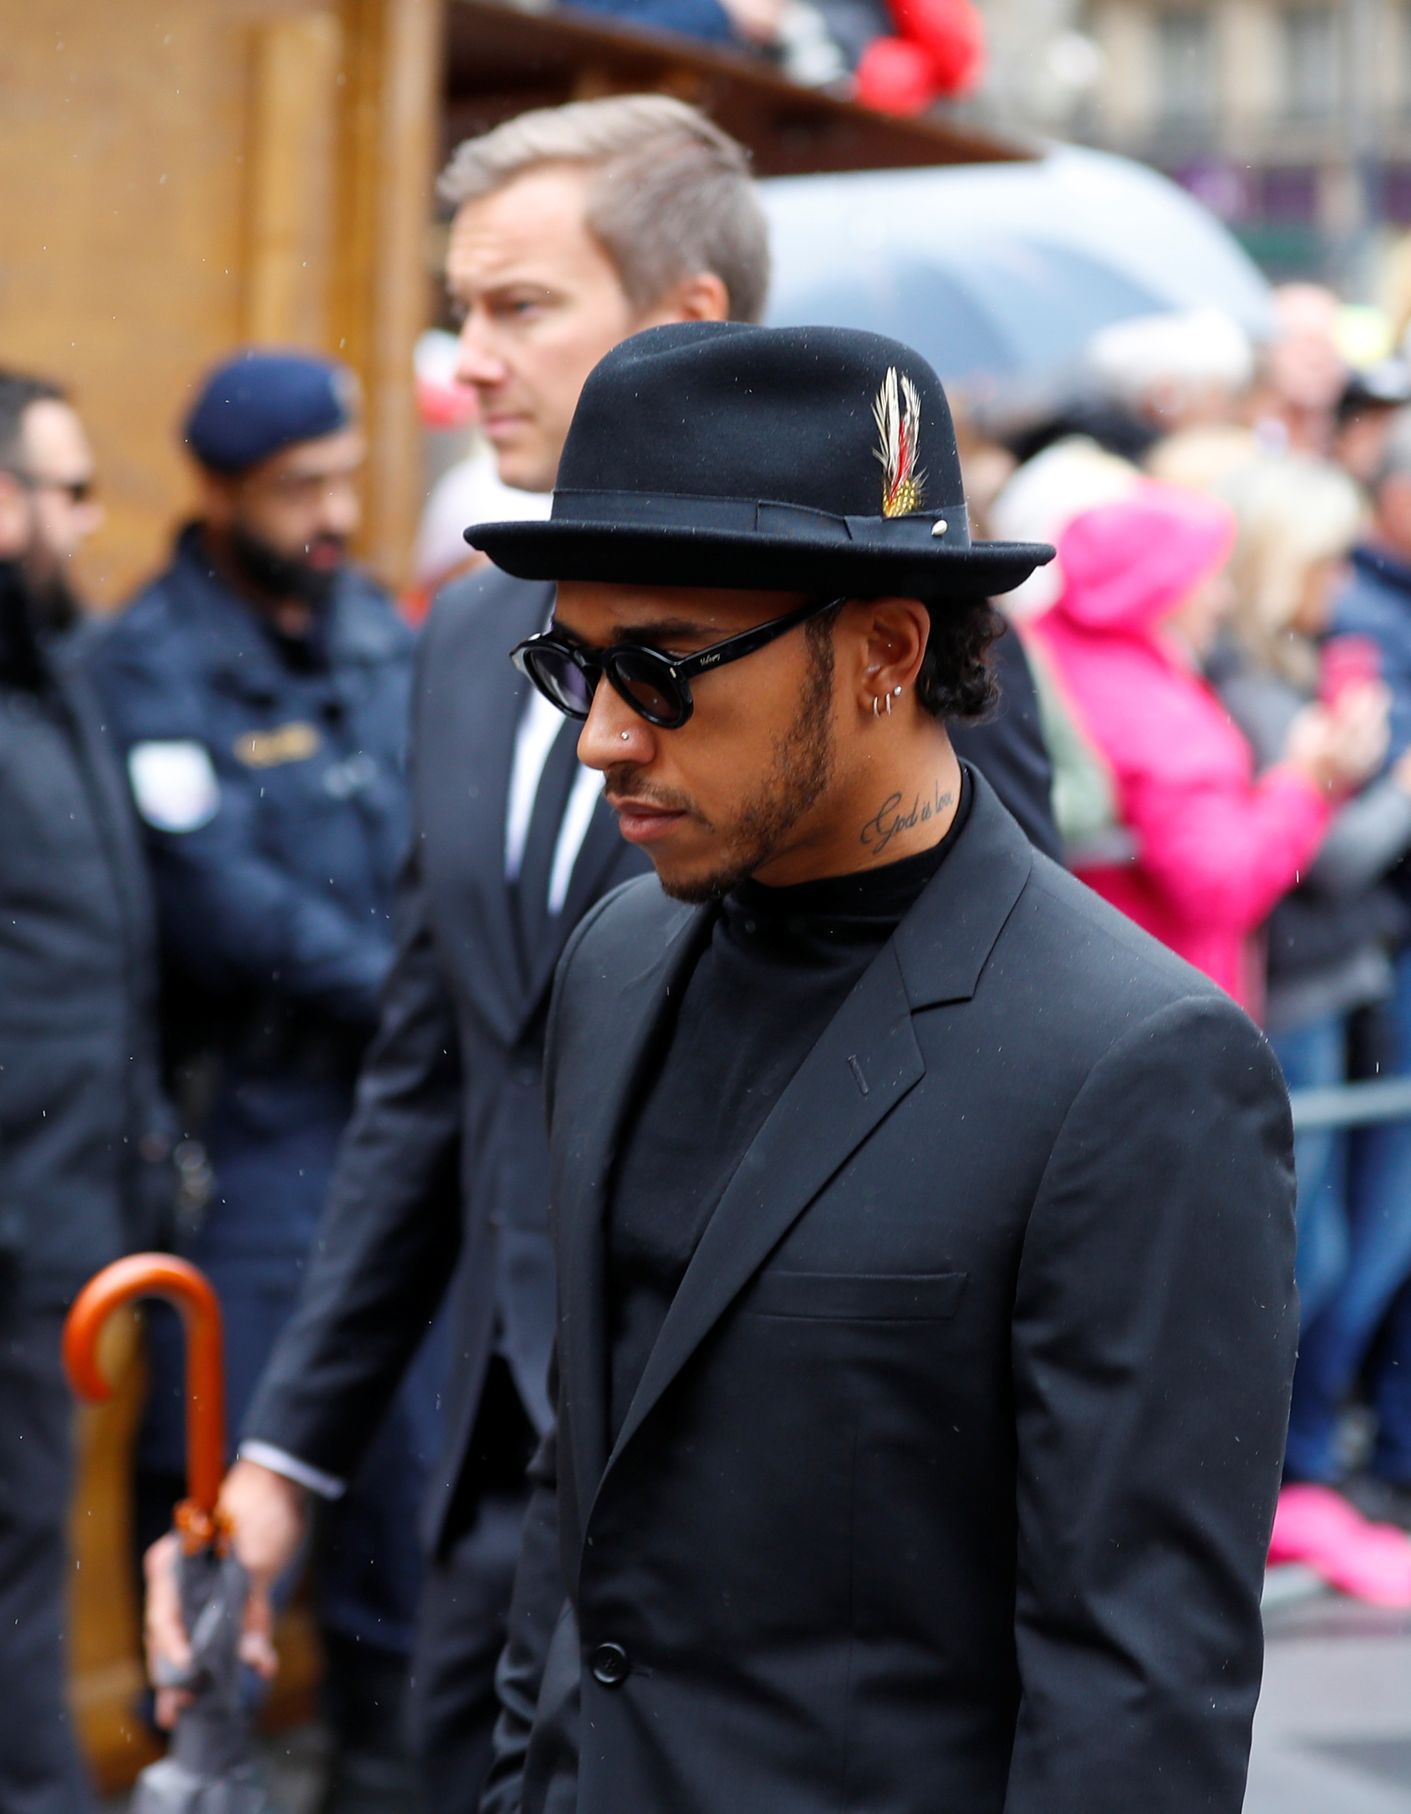 Šampion F1 Lewis Hamilton přichází na zádušní mši za Nikiho Laudu ve vídeňské katedrále svatého Štěpána